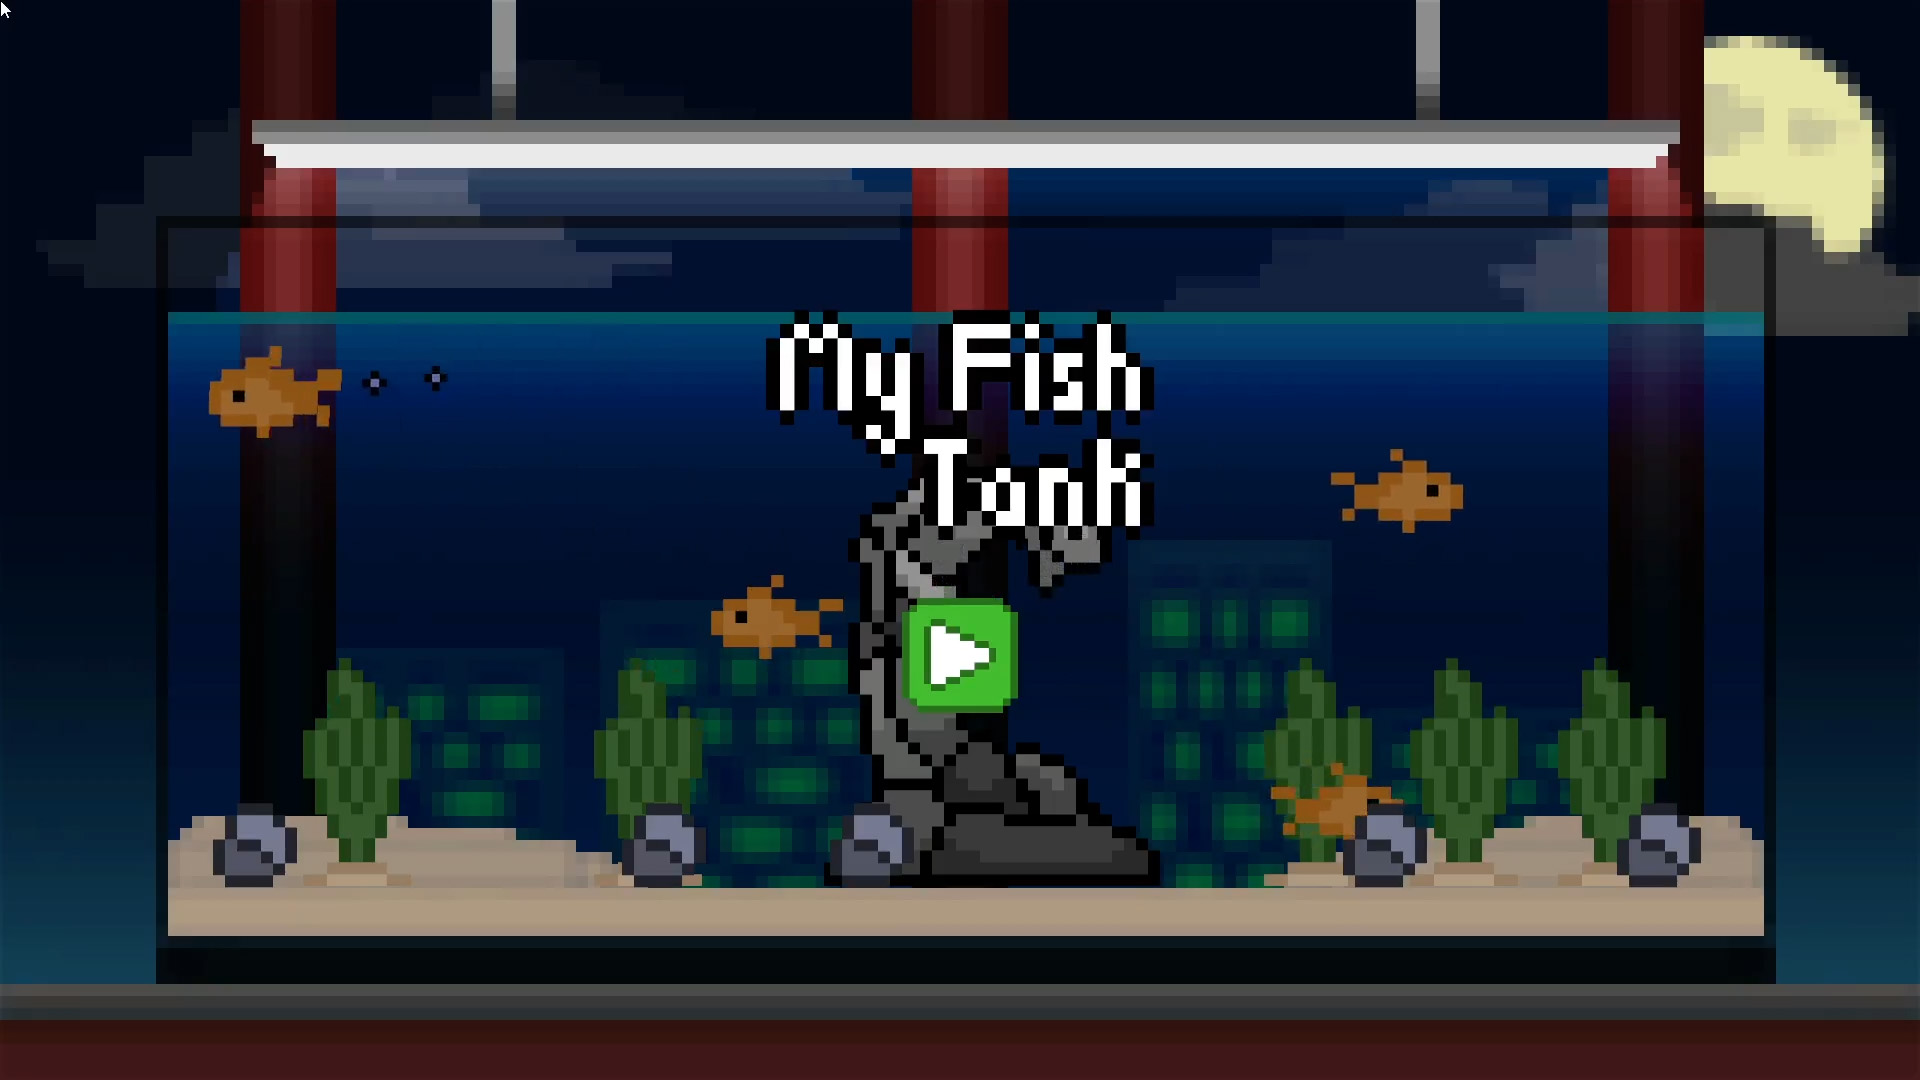 My Fish Tank Main Menu